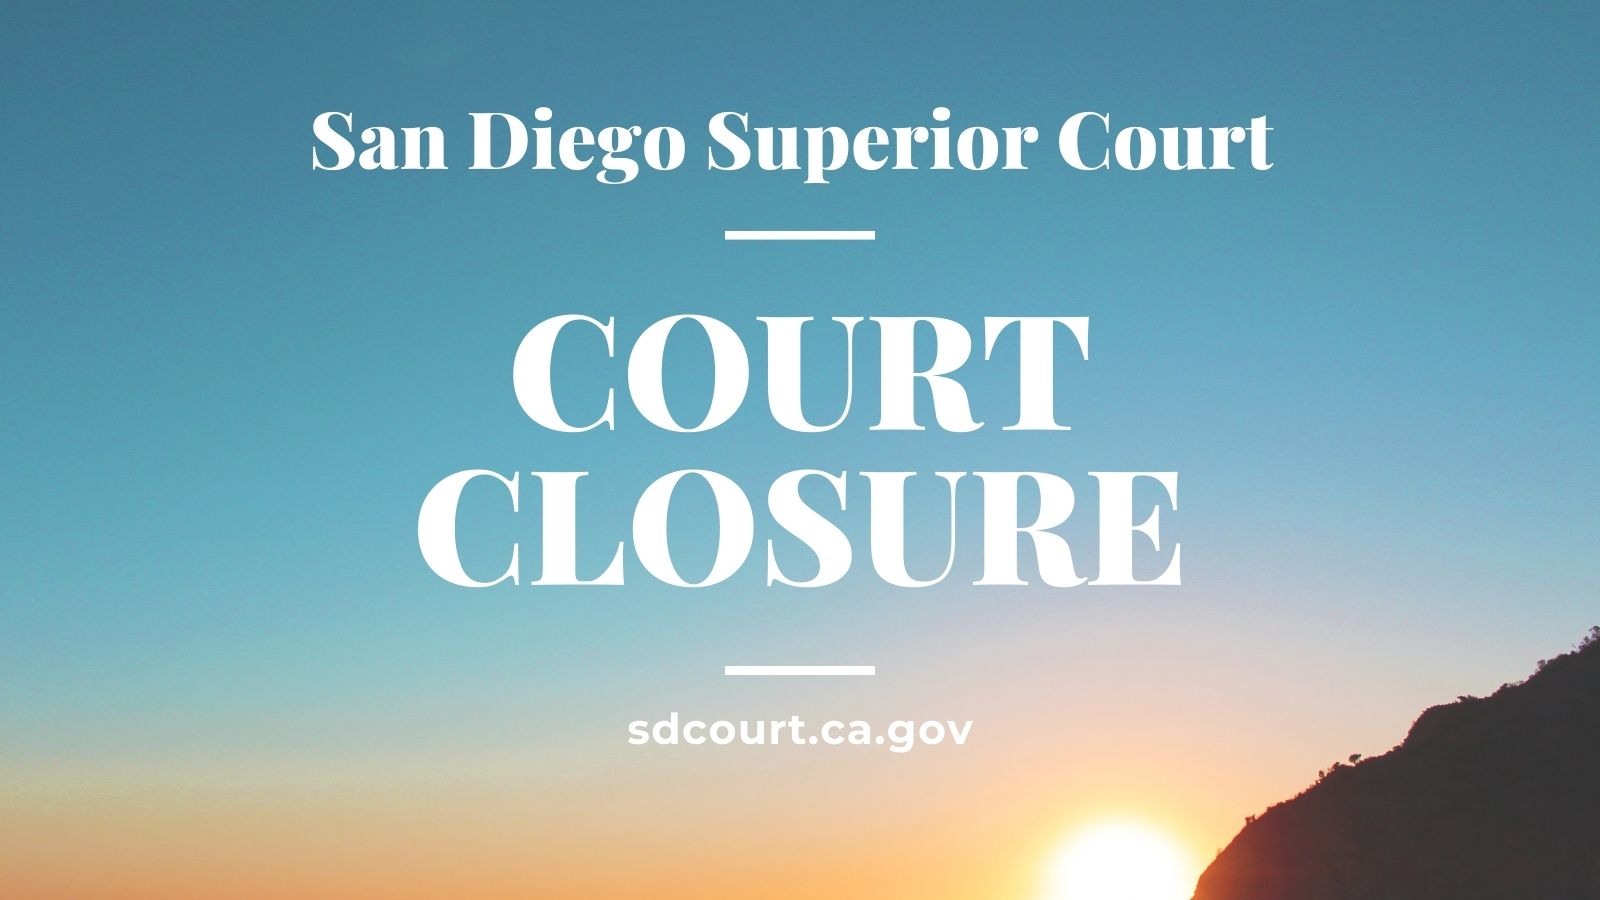 Court closure